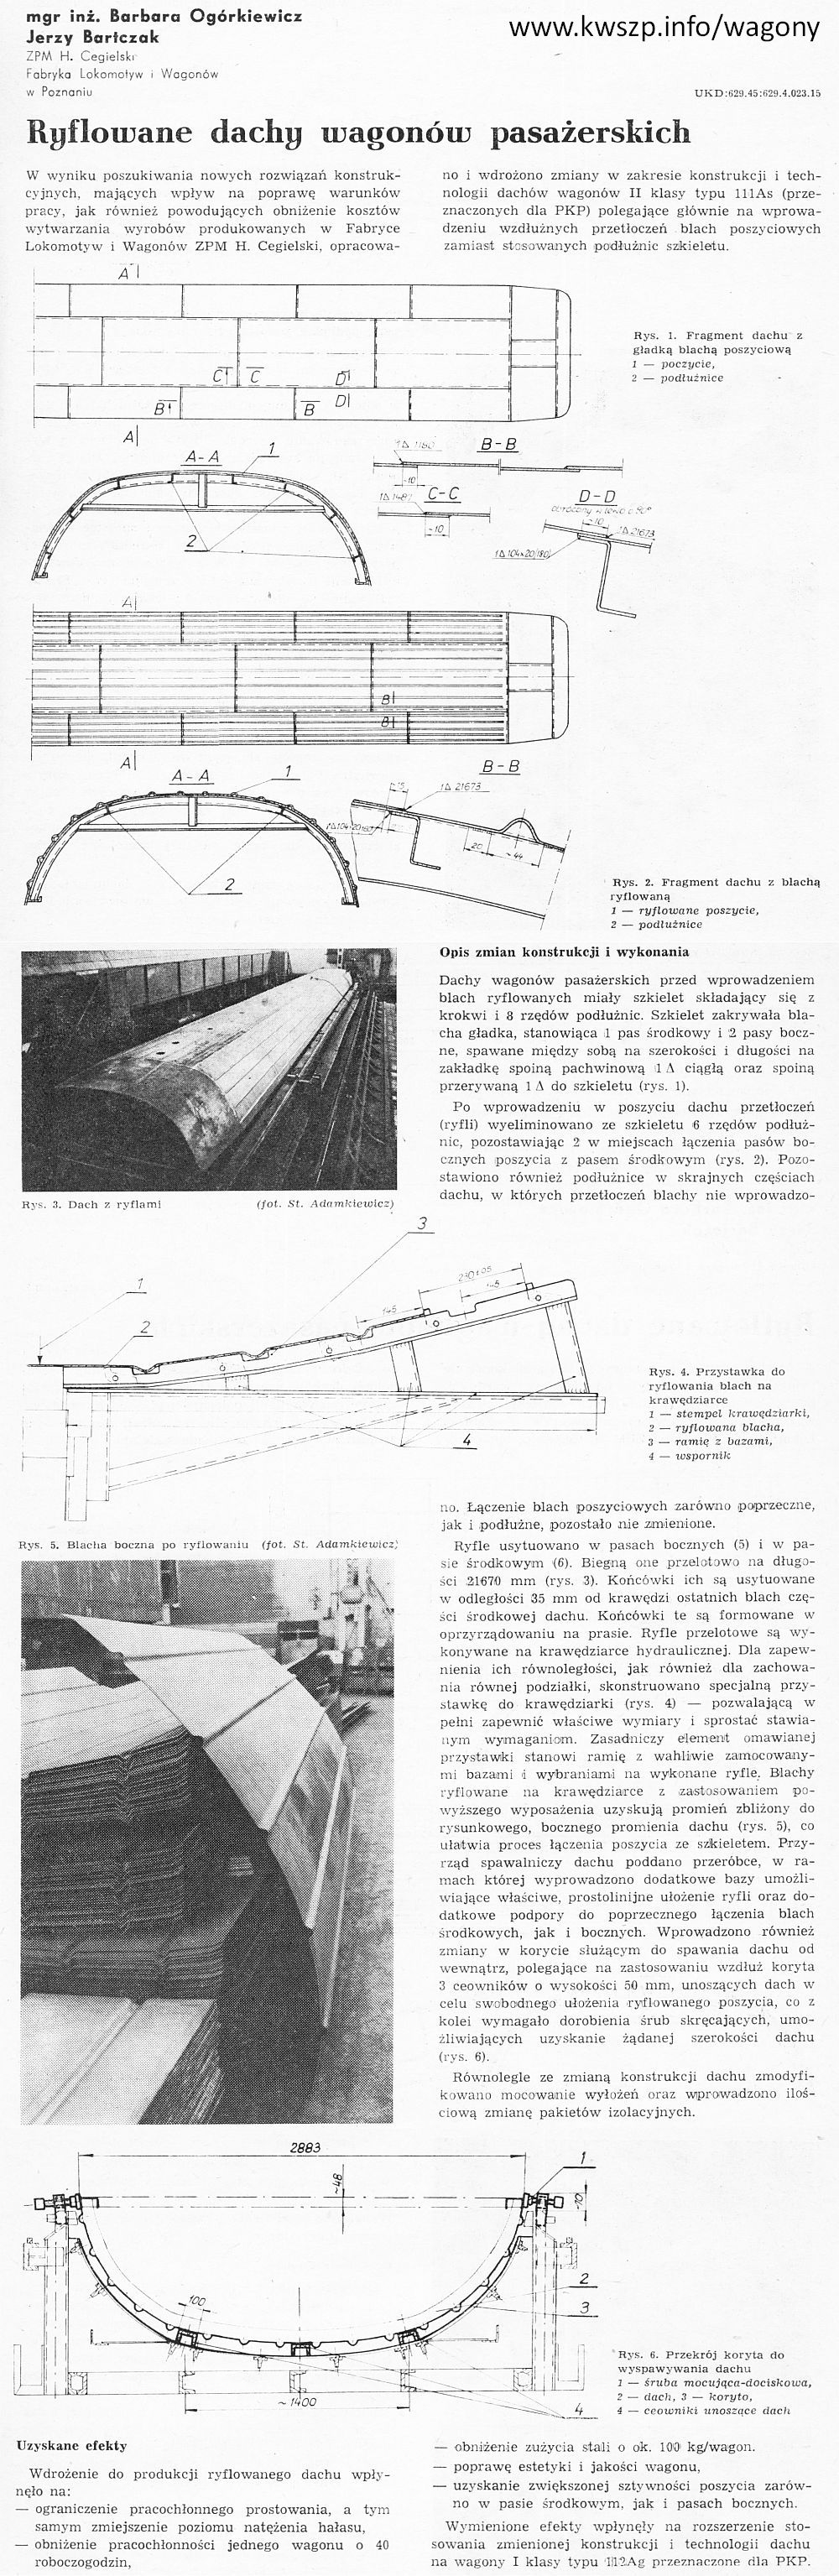 Trakcja i wagony 1985-03 s85-97 Ryflowane dachy wagonów pasażerskich